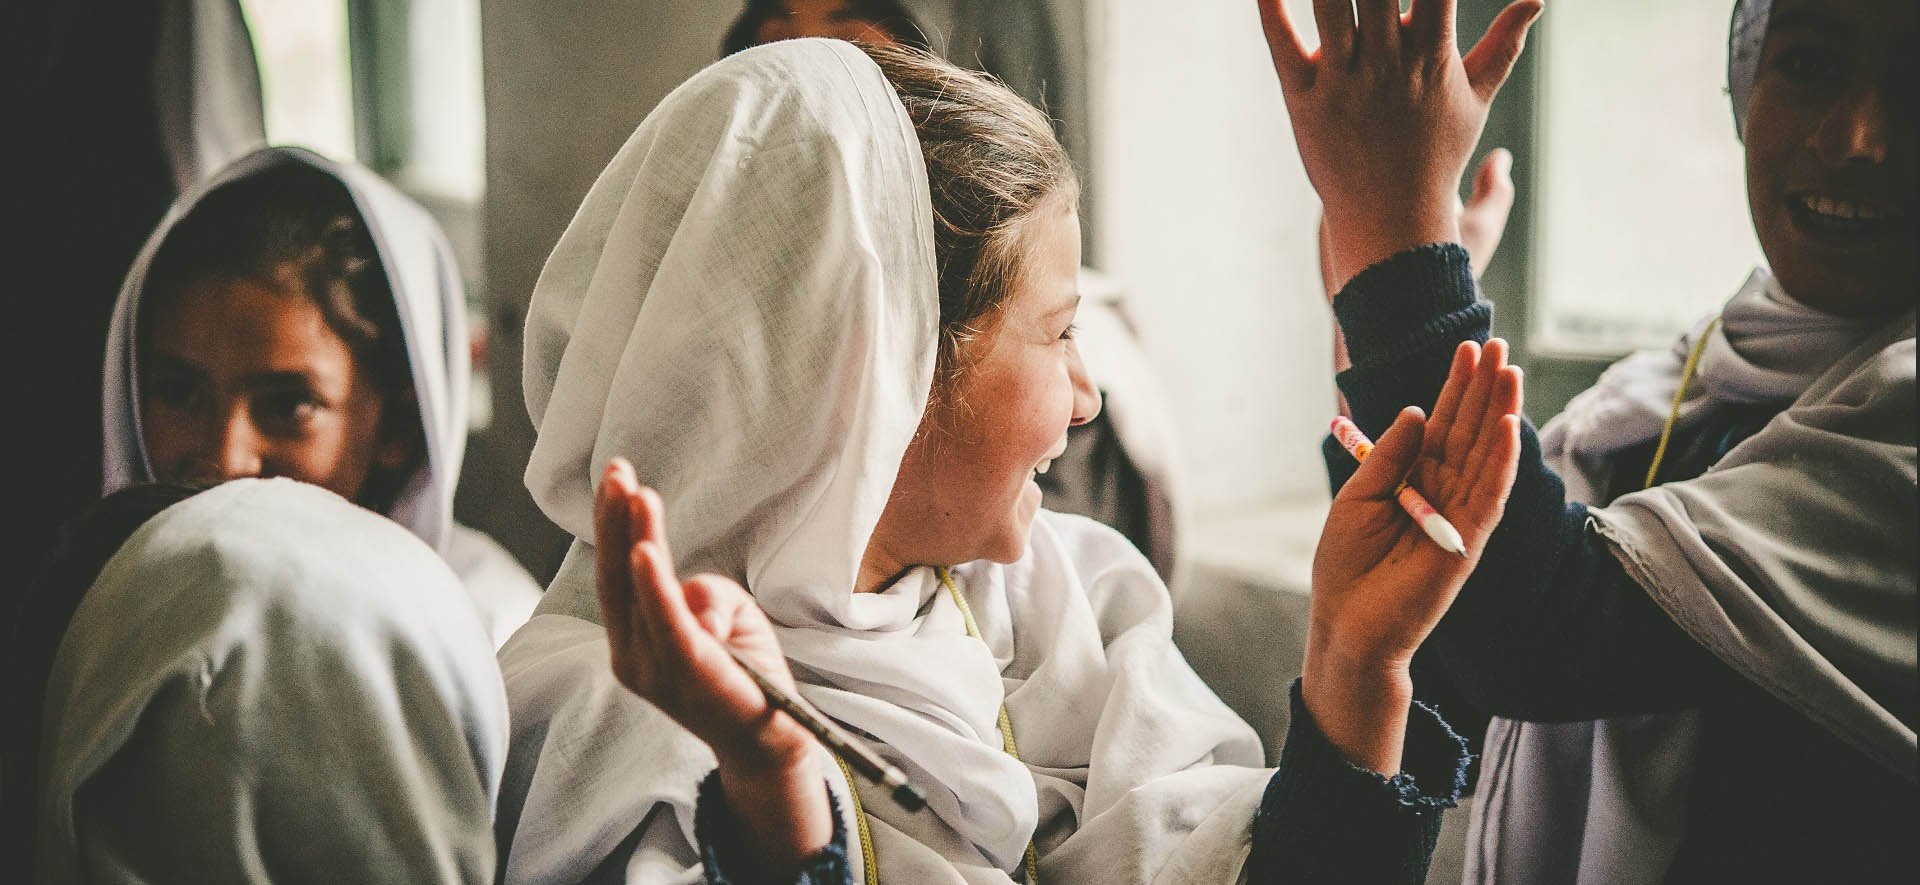 Maira, 14 ans, mariée de force, espère un miracle à Pâques